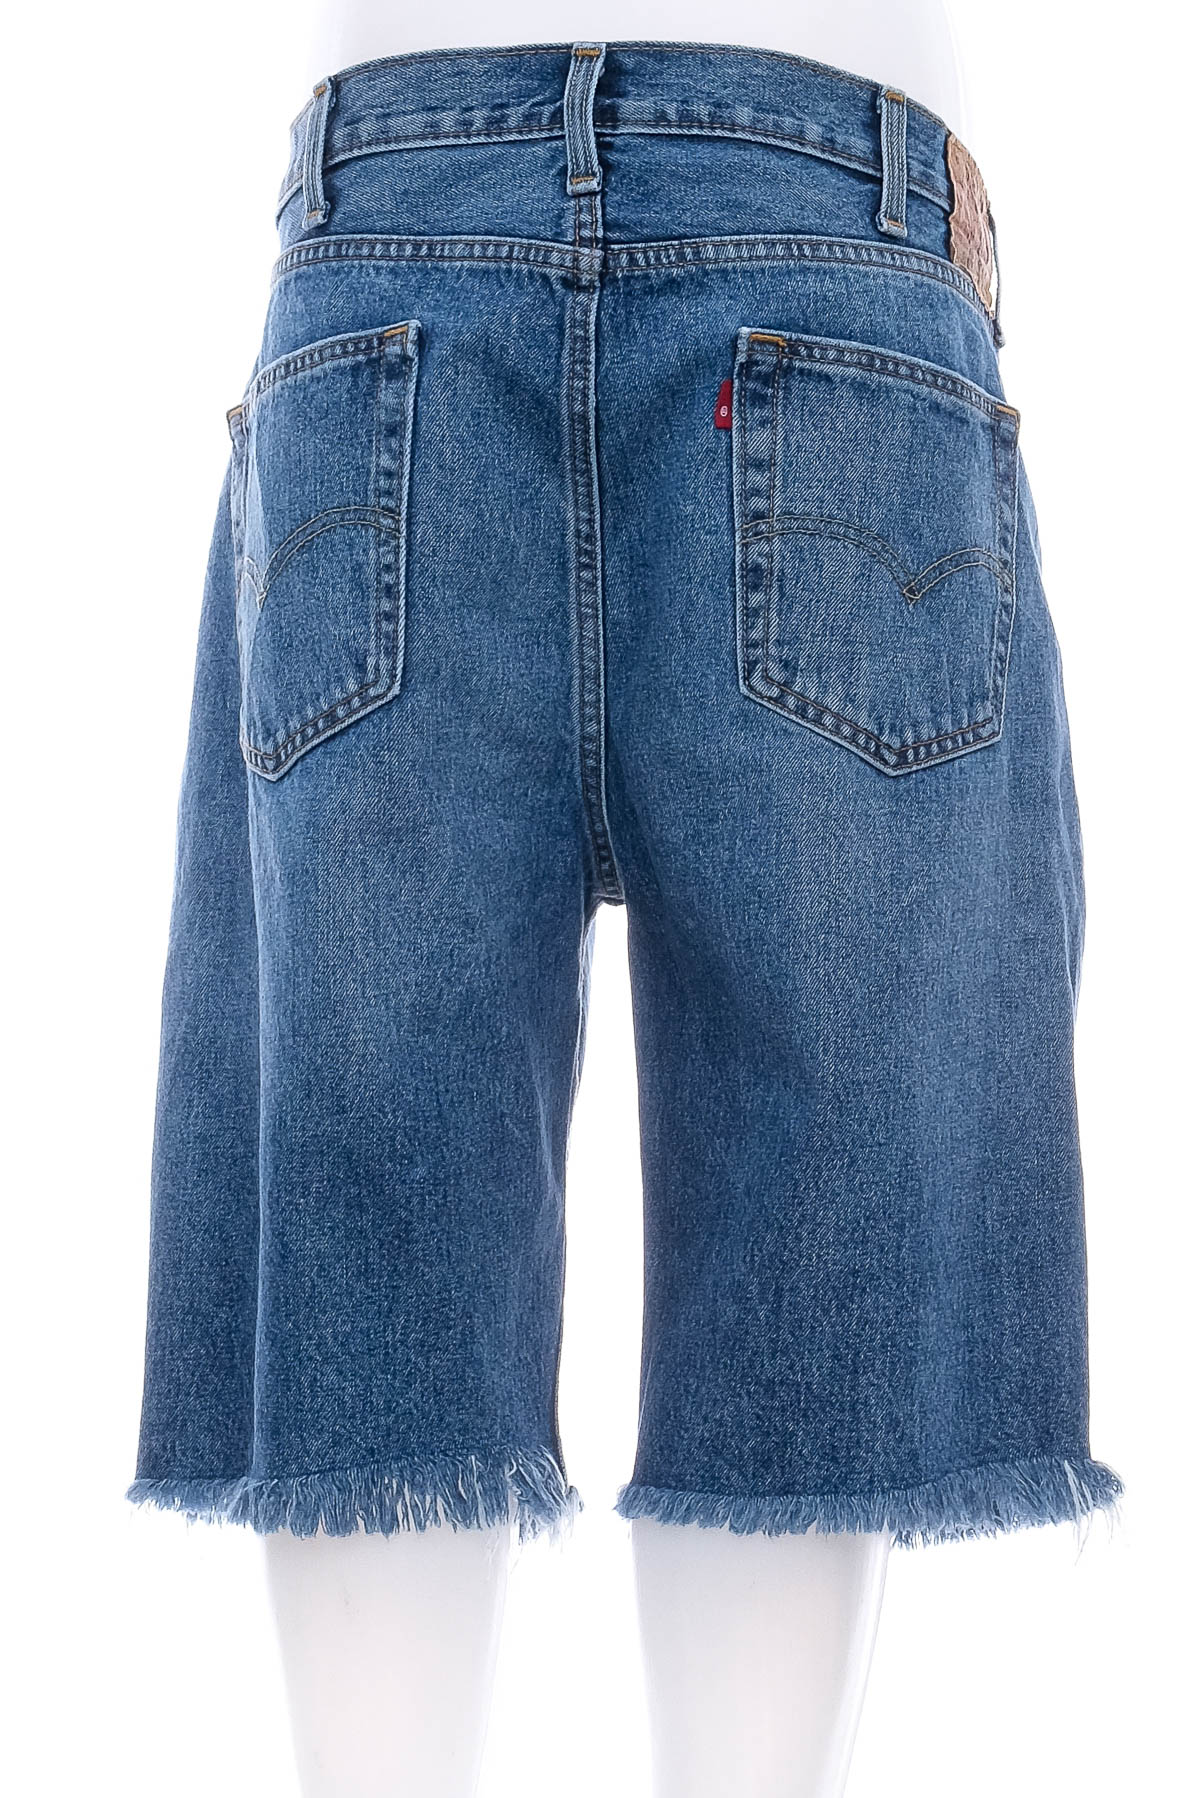 Pantaloni scurți bărbați - Levi Strauss & Co. - 1